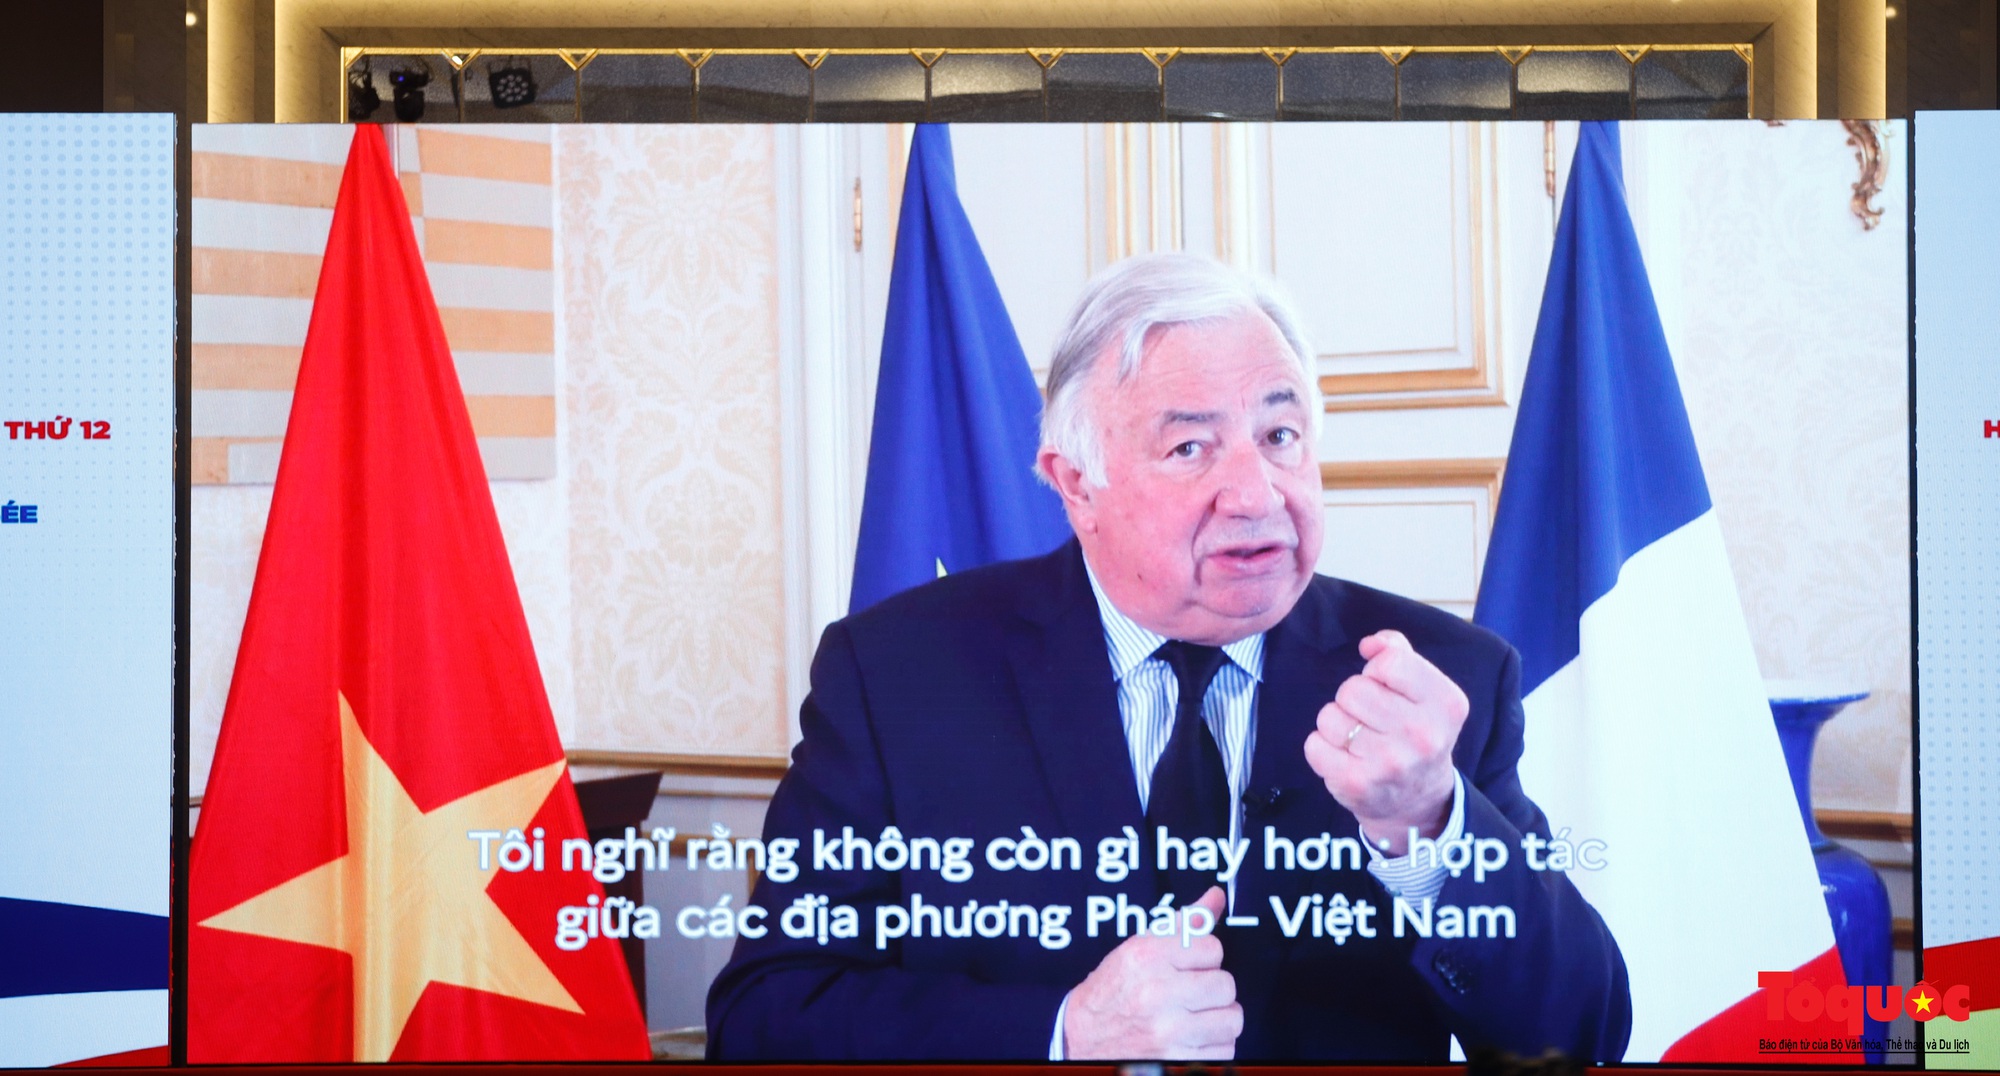 Chùm ảnh: Khai mạc Hội nghị hợp tác giữa các địa phương Việt Nam và Pháp lần thứ 12 - Ảnh 11.